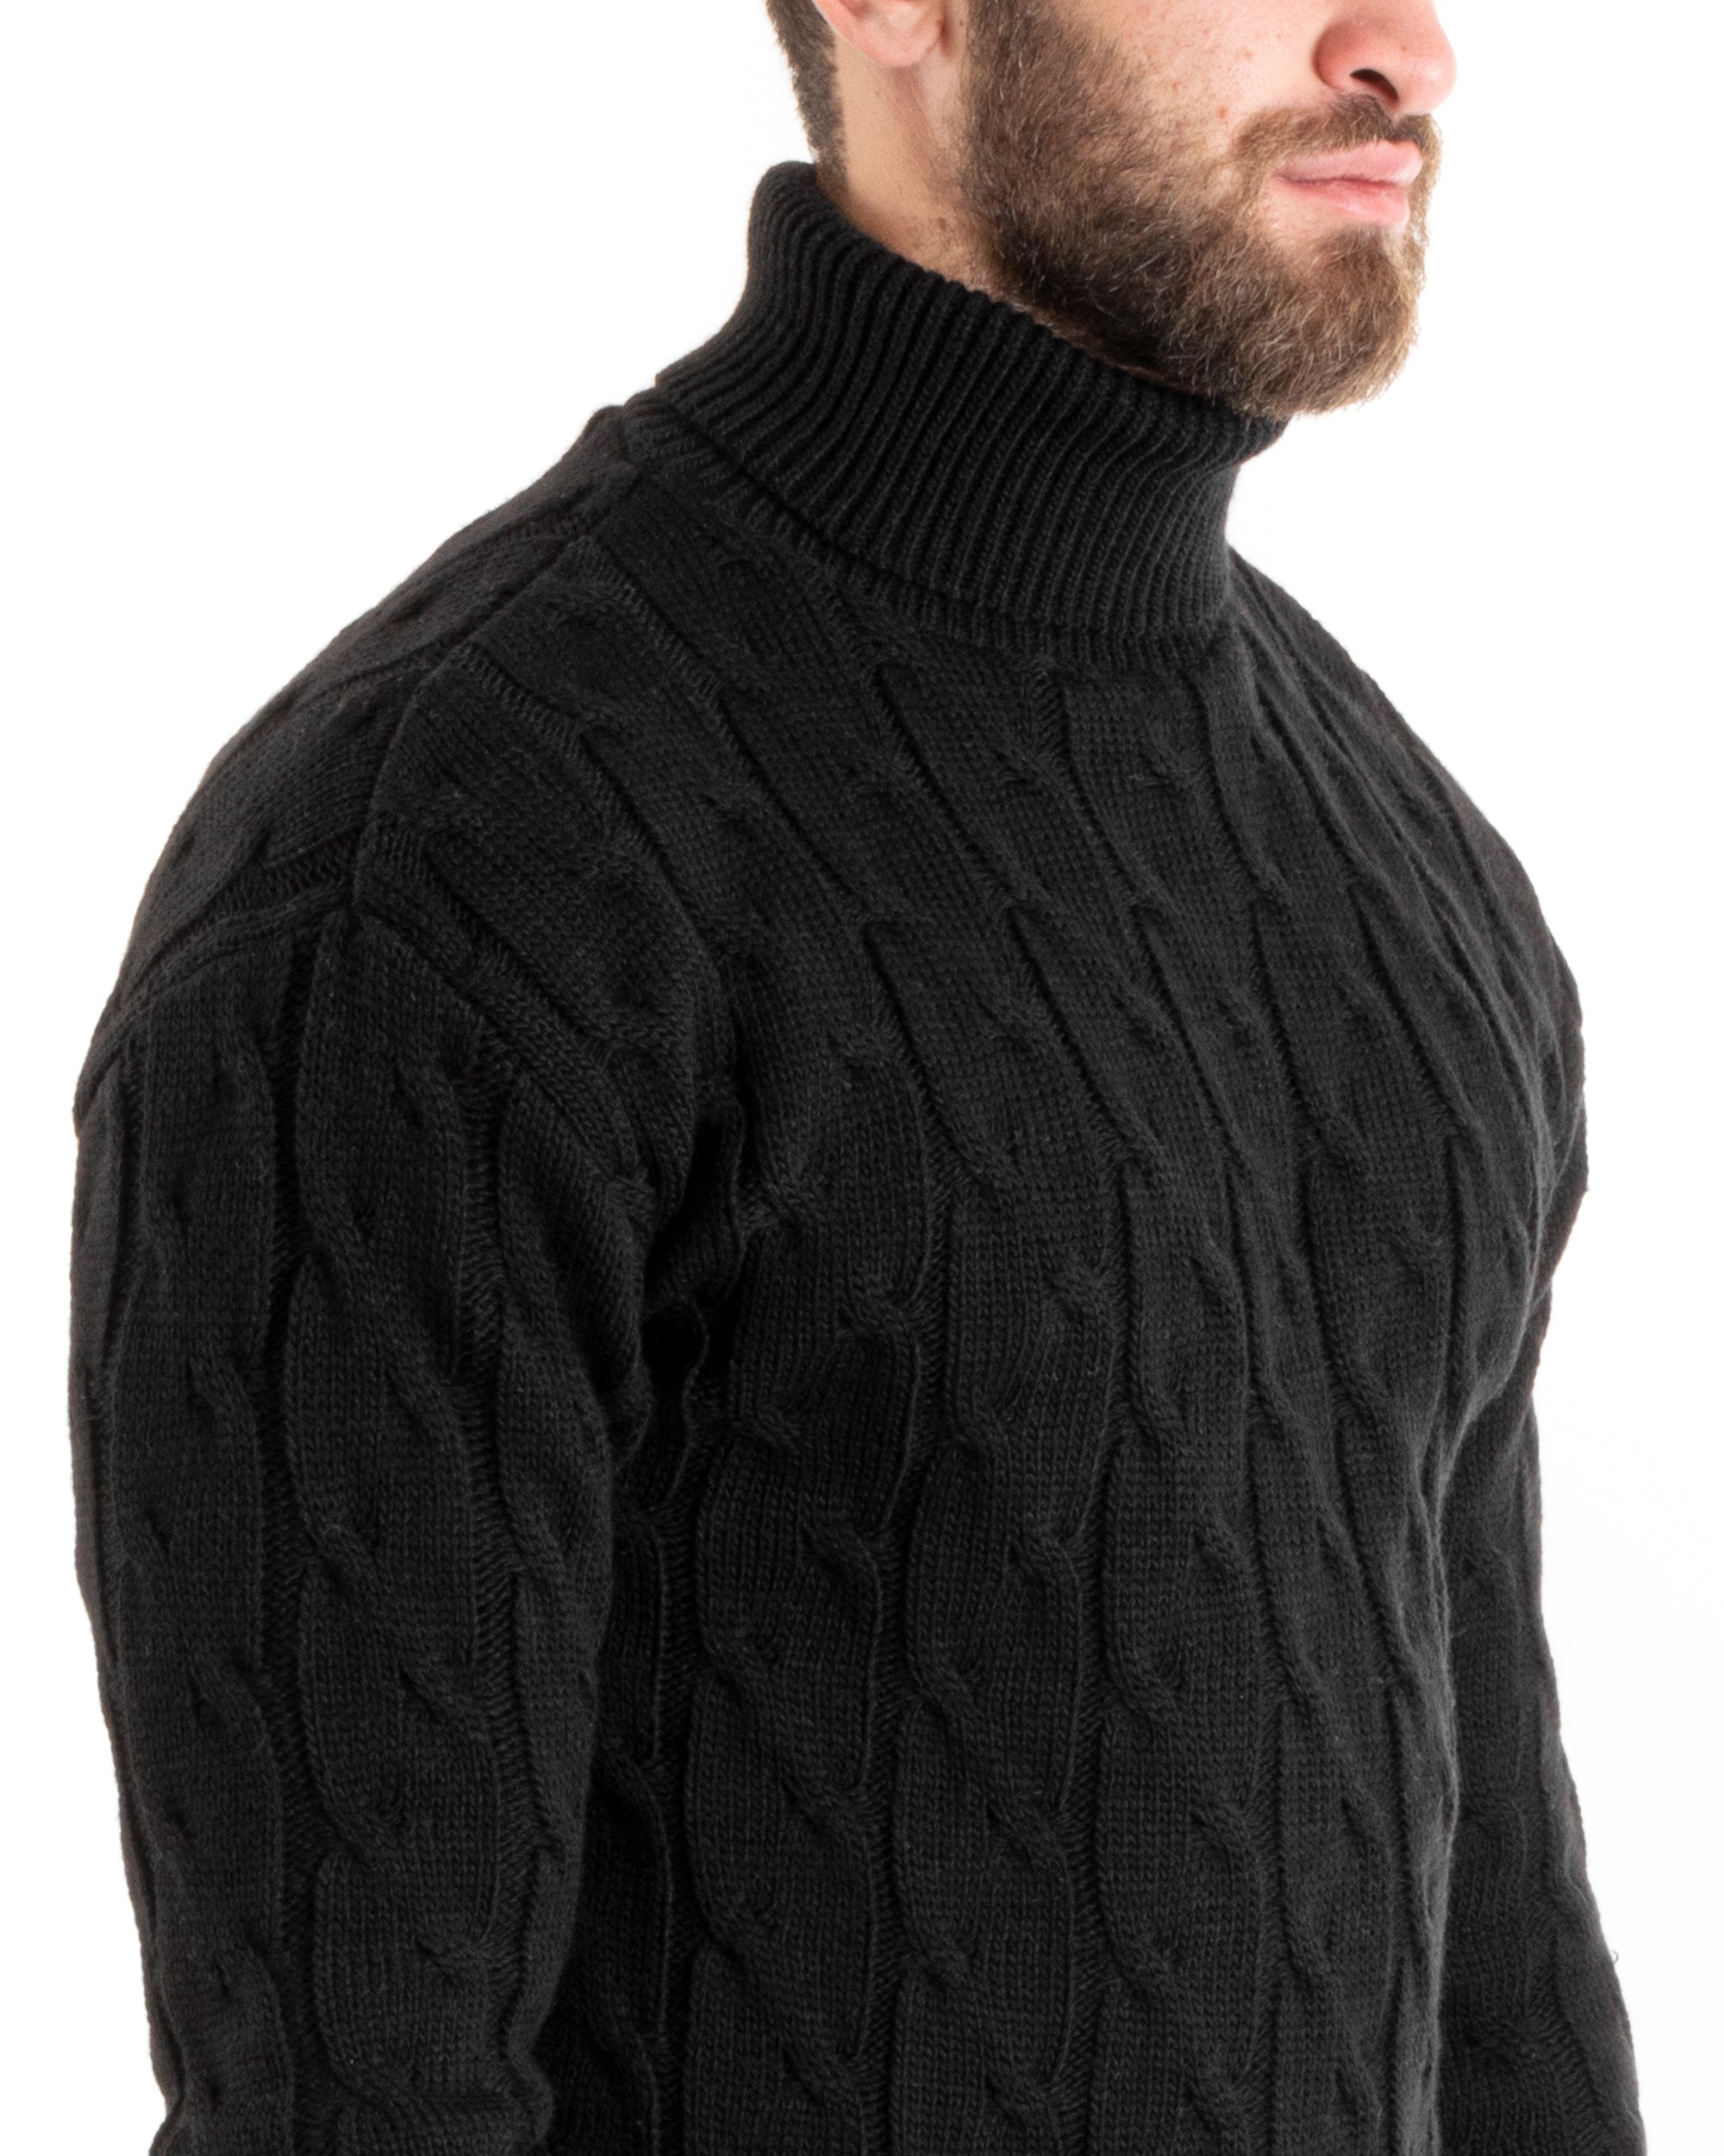 Maglioncino Uomo Collo Alto Maglia Inglese Con Trecce Nero Pullover Dolcevita GIOSAL-M2715A